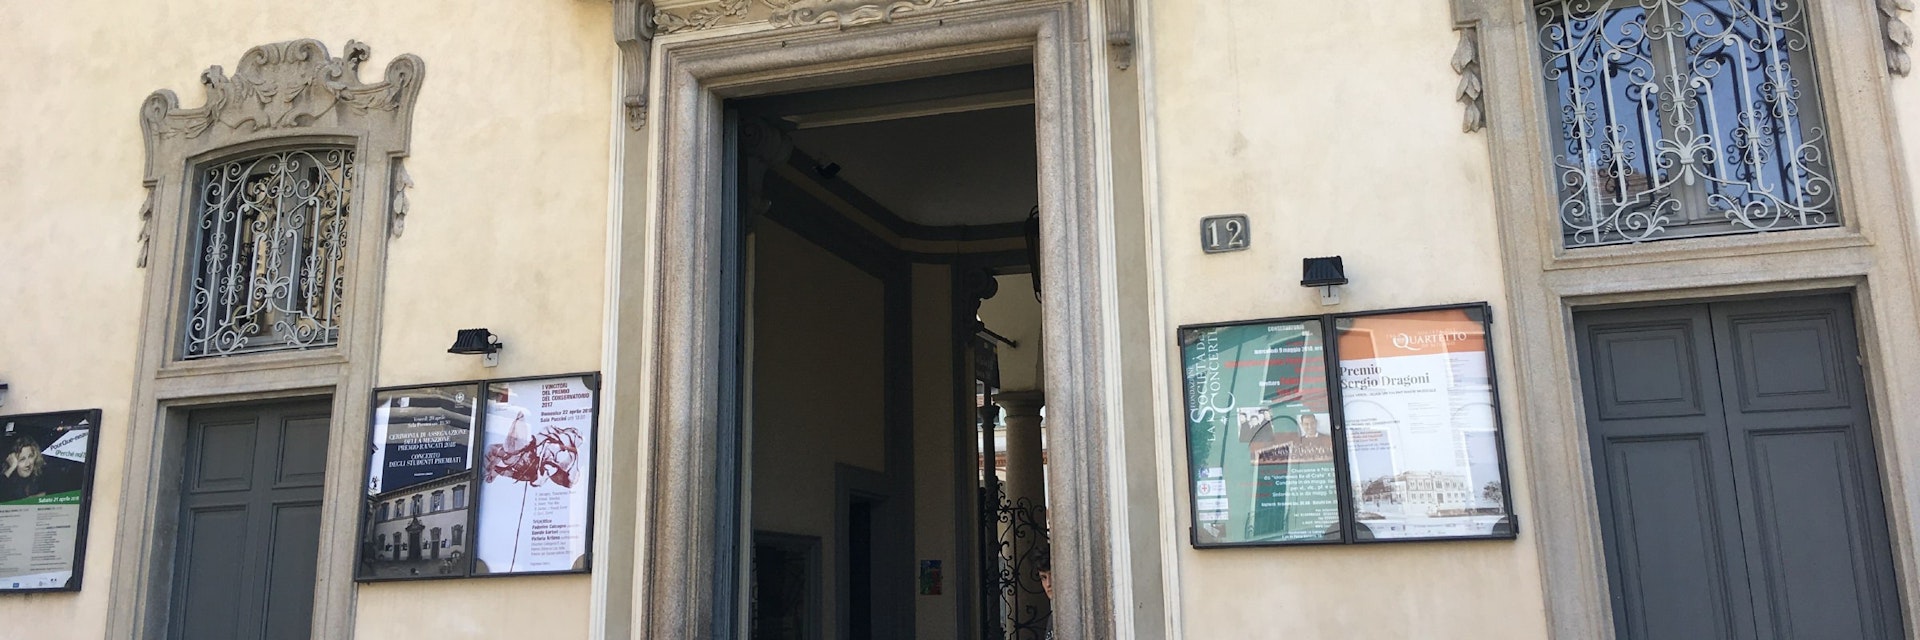 Entrance to the Conservatorio di Musica Giuseppe Verdi.